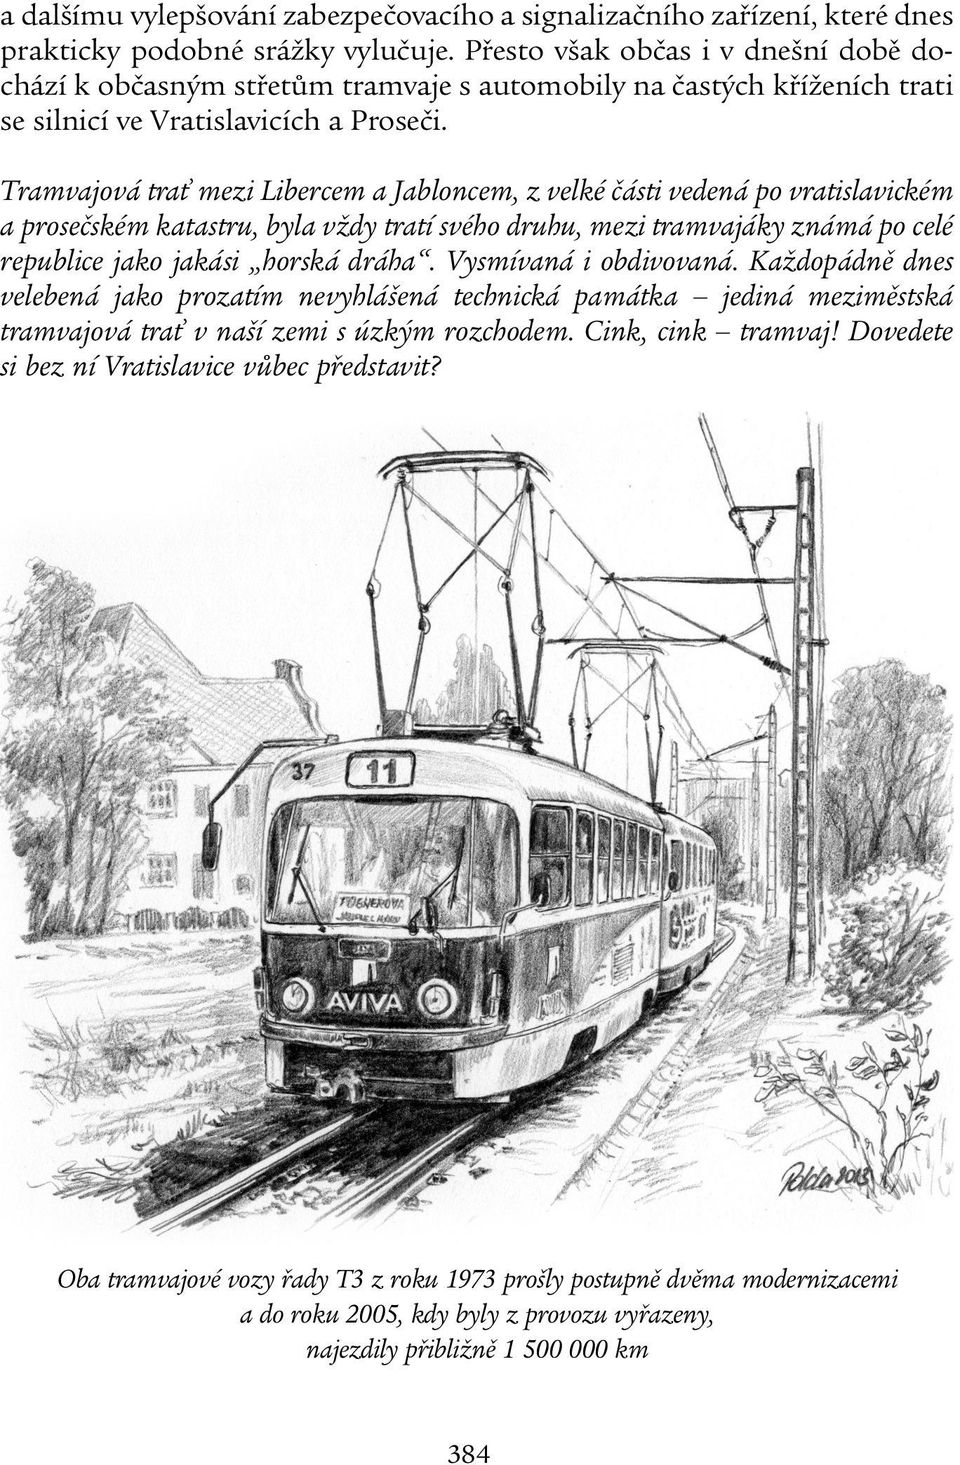 Tramvajová trať mezi Libercem a Jabloncem, z velké části vedená po vratislavickém a prosečském katastru, byla vždy tratí svého druhu, mezi tramvajáky známá po celé republice jako jakási horská dráha.